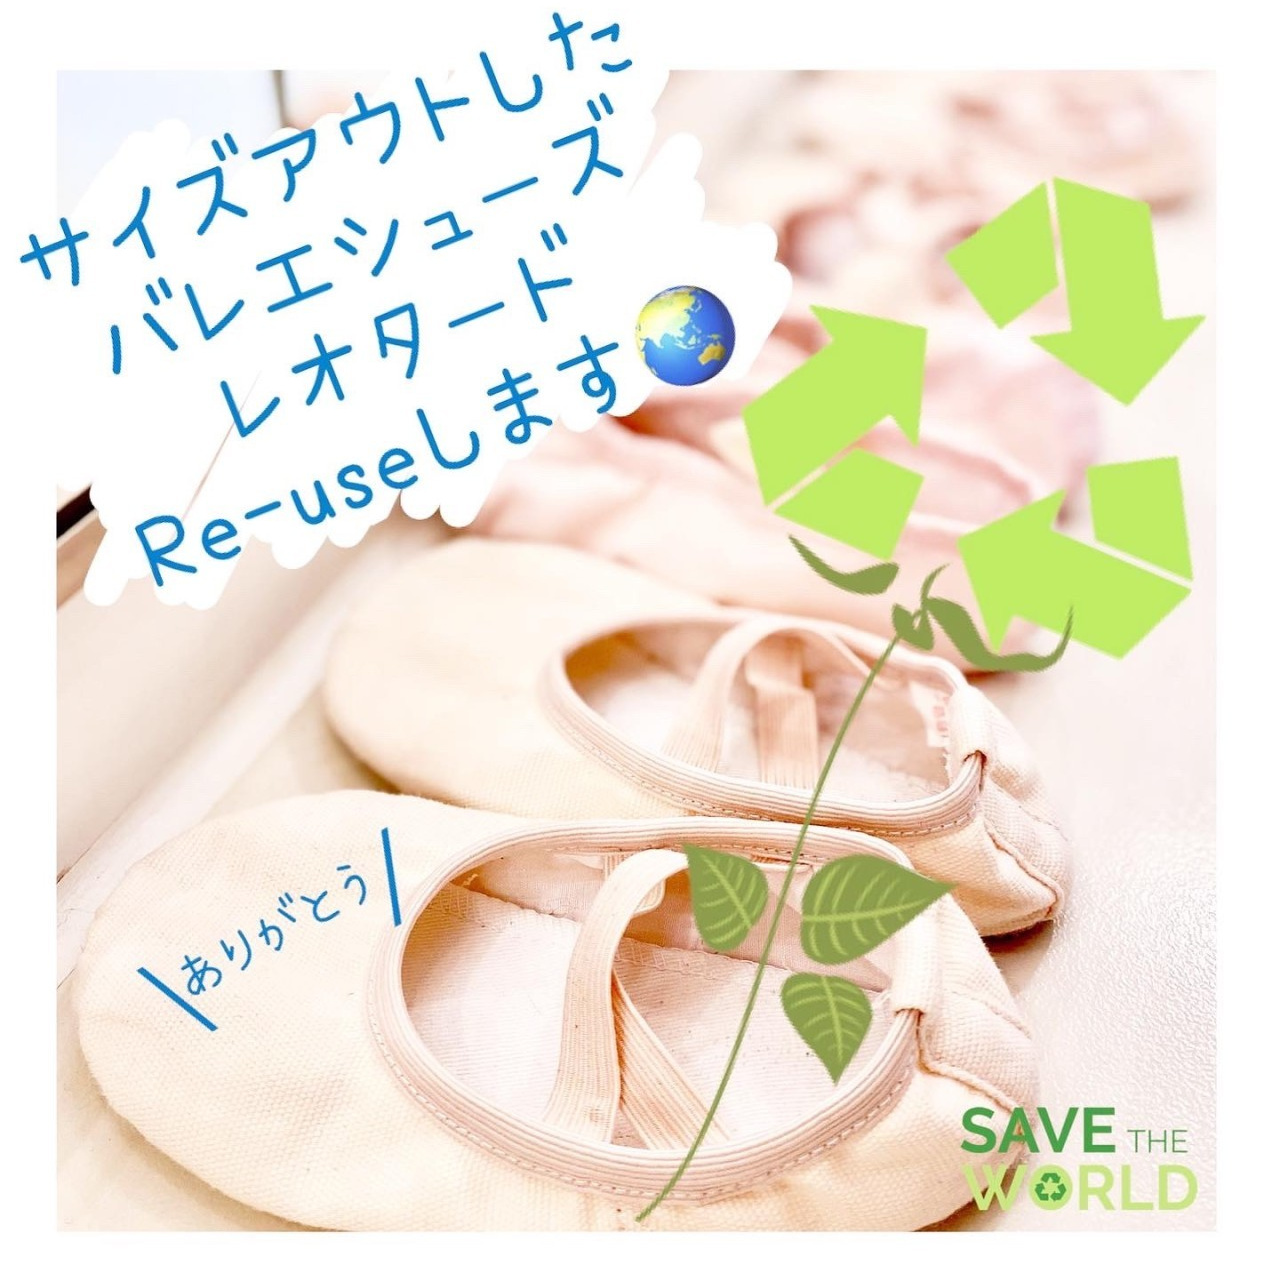 東京港区バレエシューズタイツのリサイクル運動